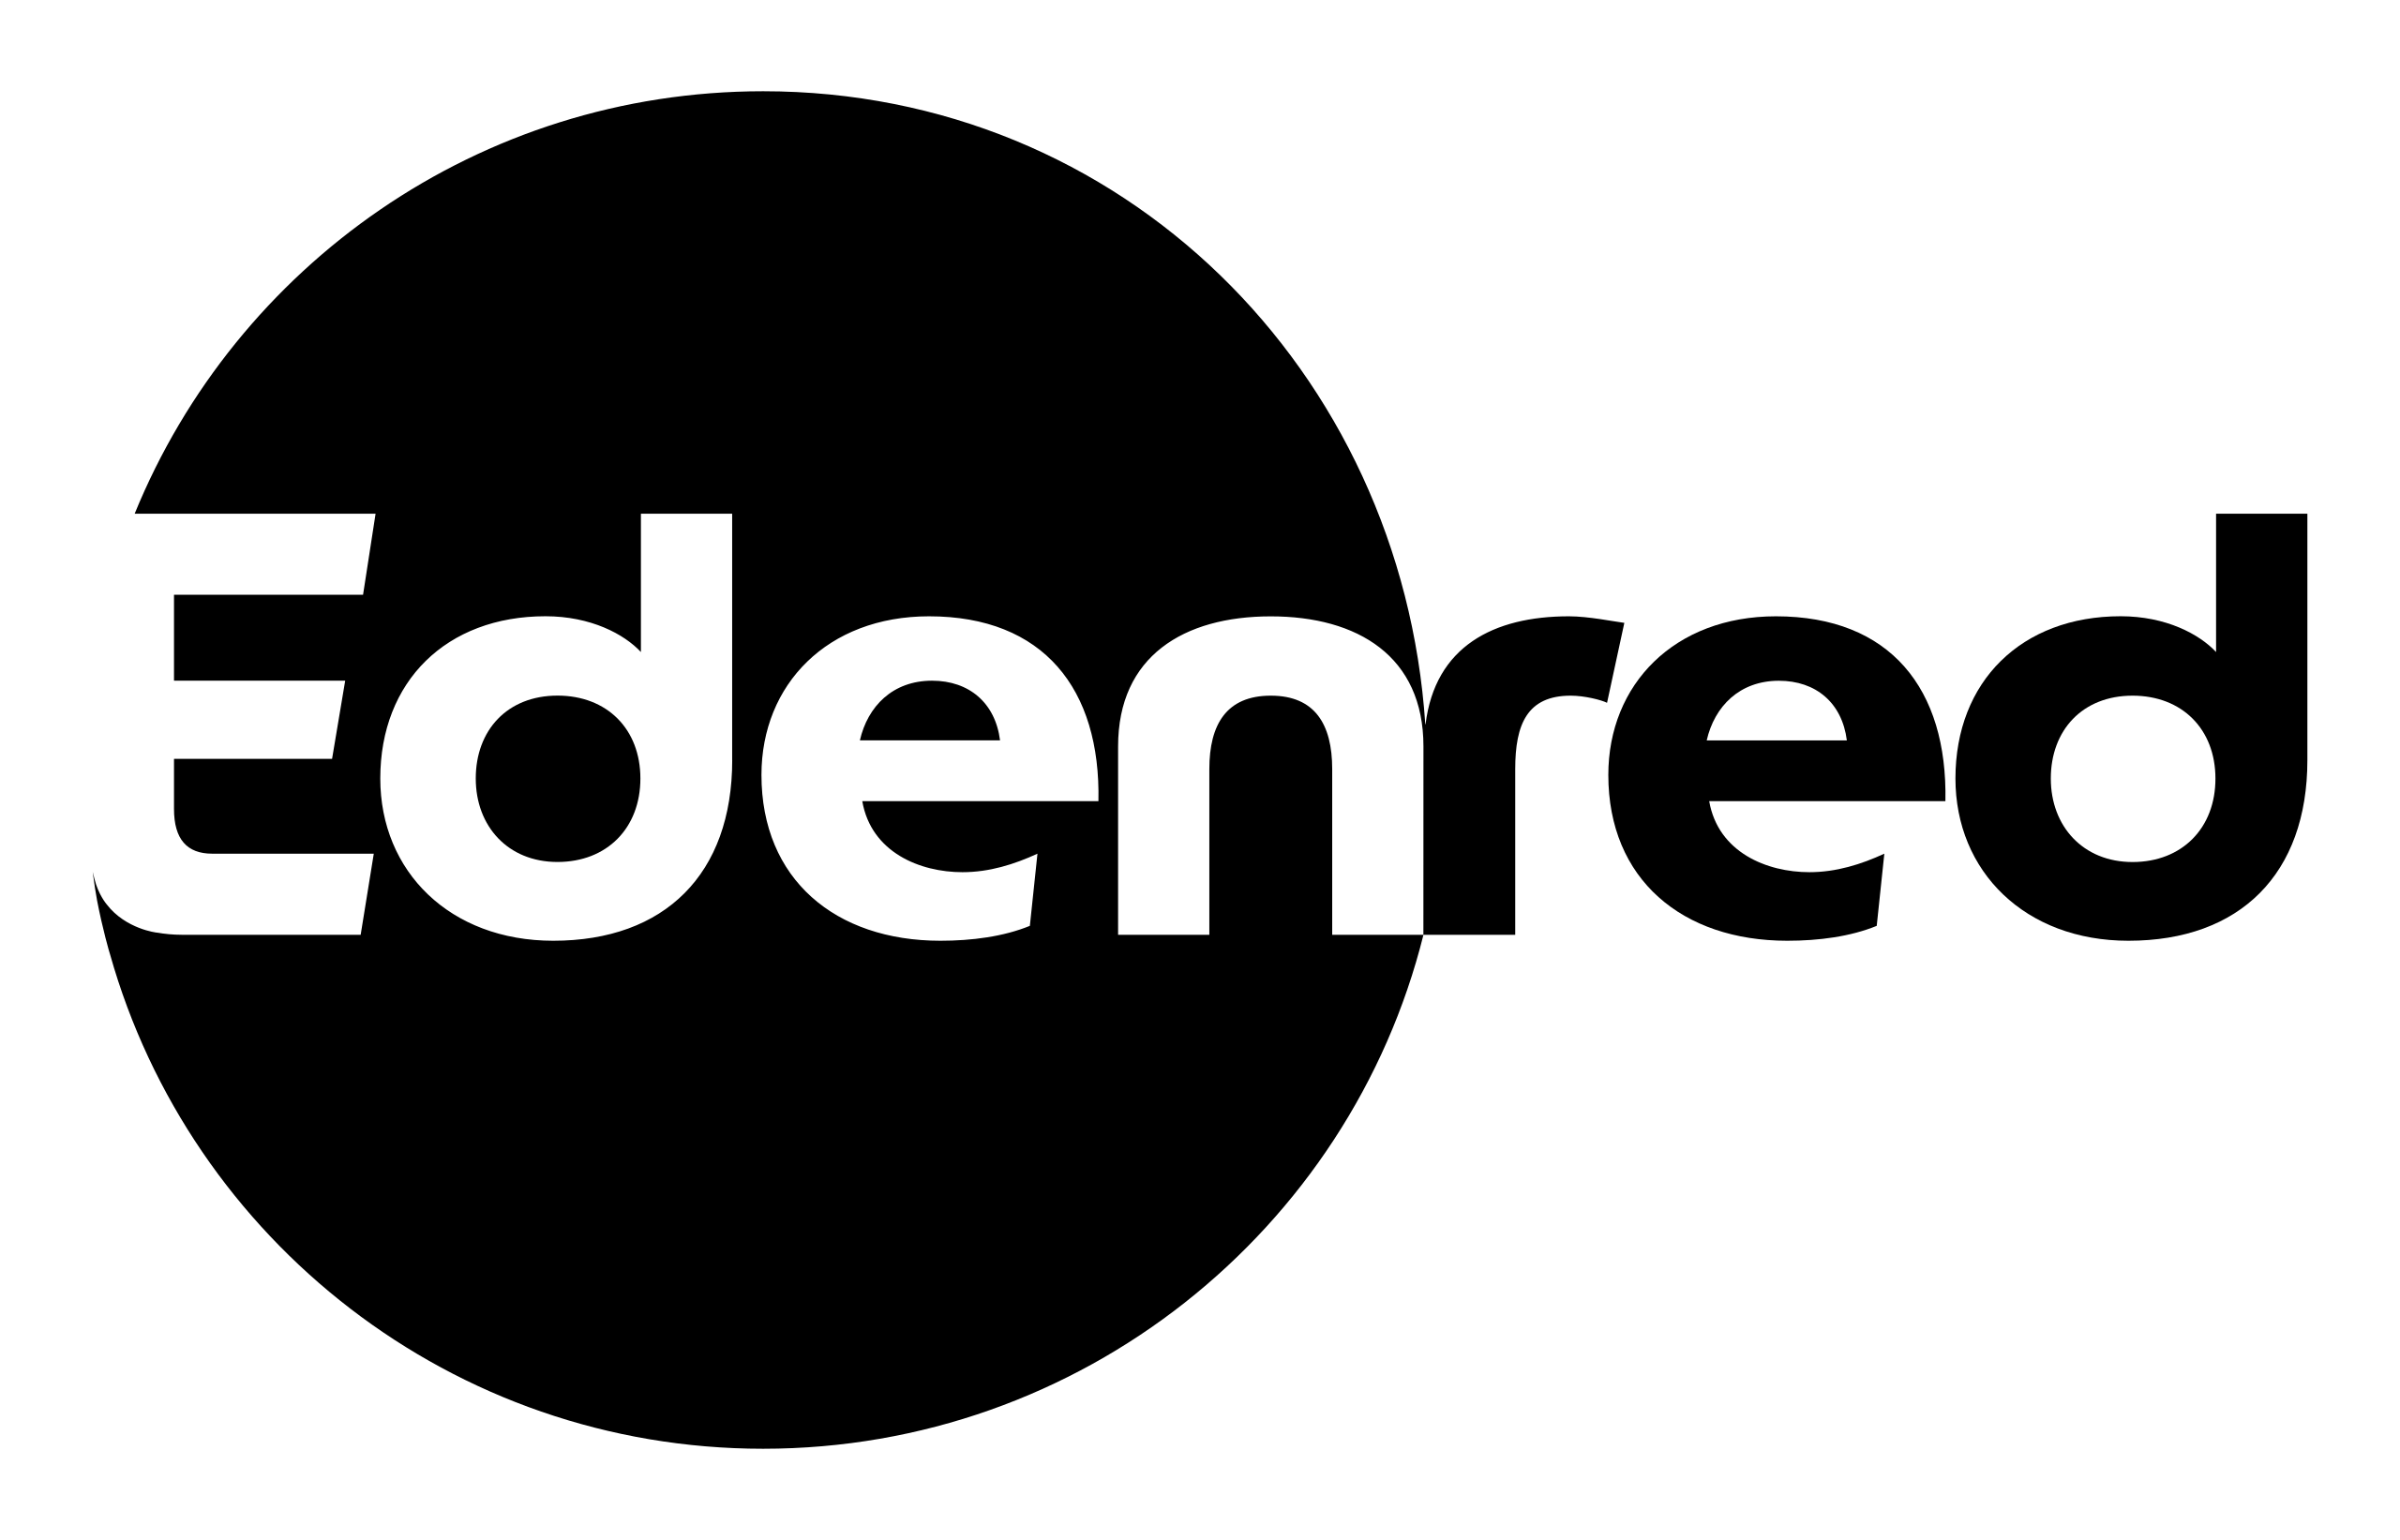 Edenred_Logo